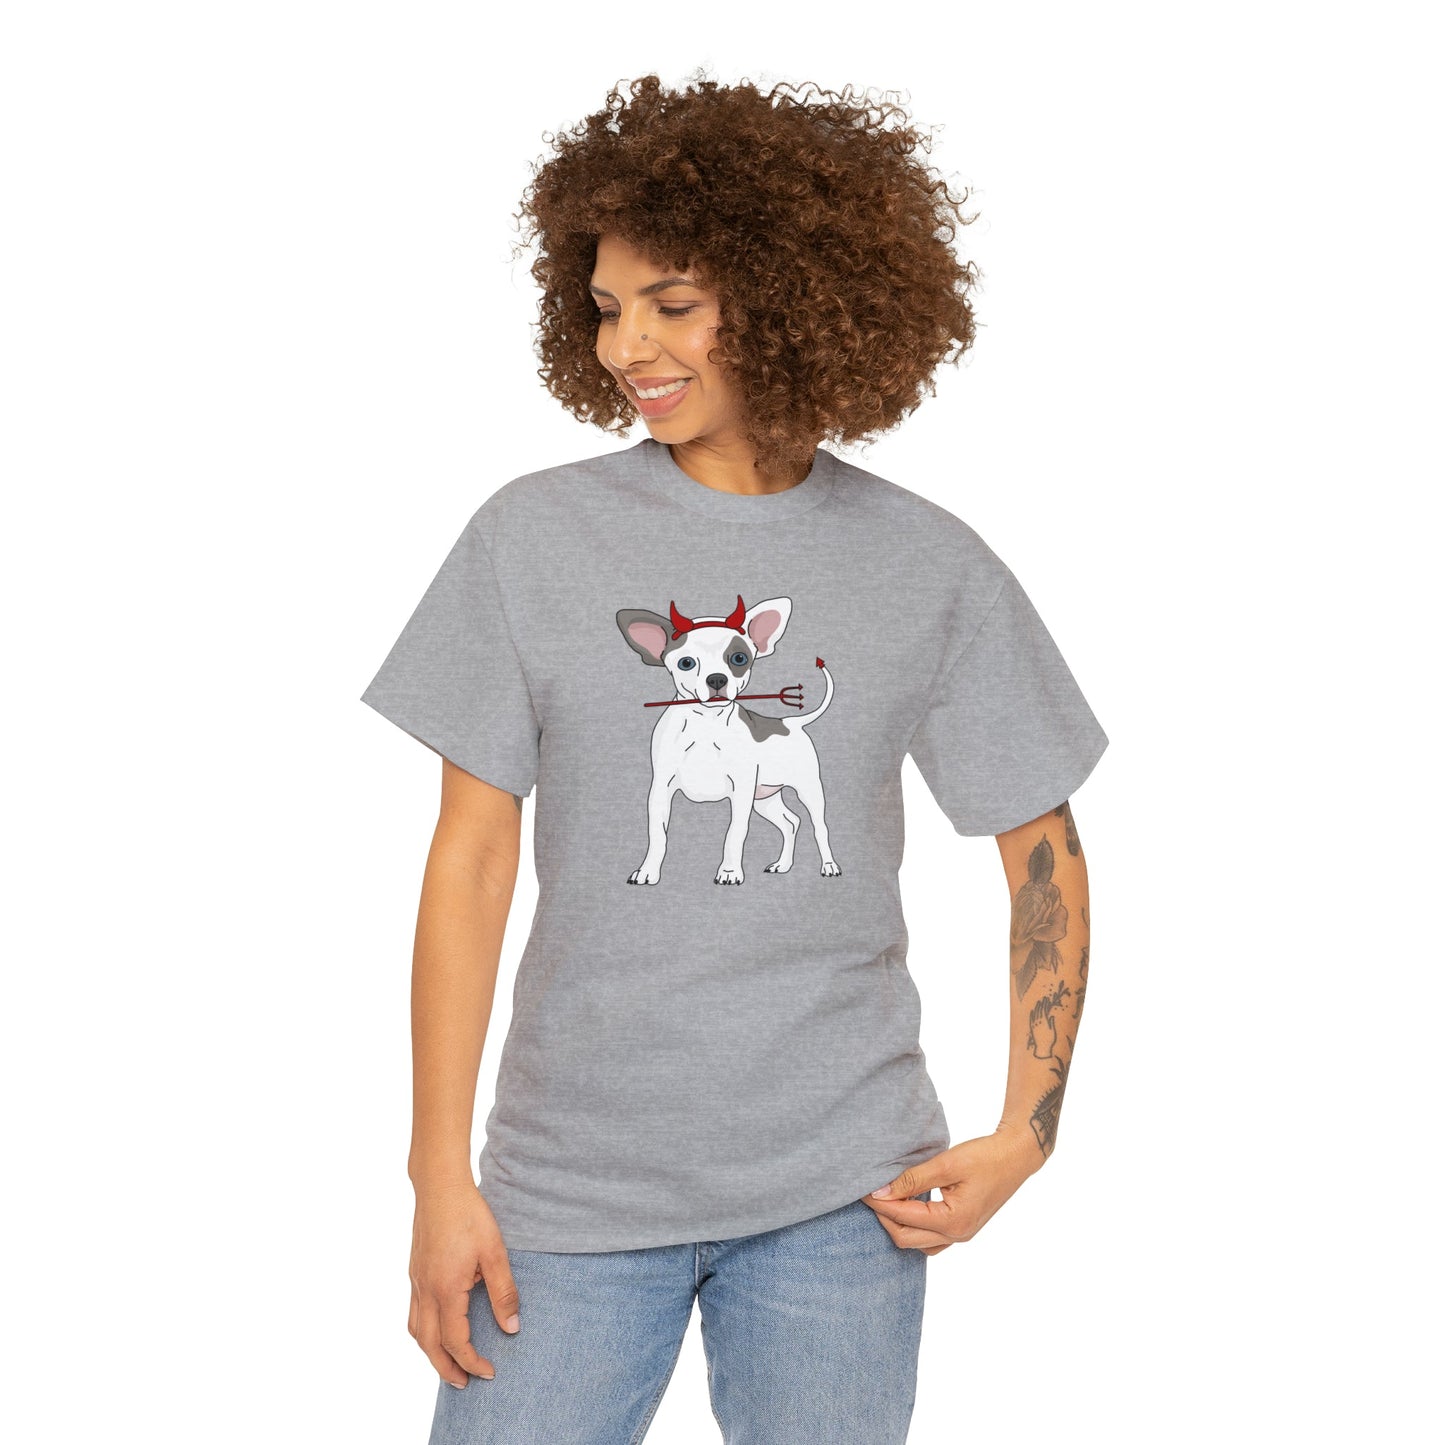 Devil Puppy | T-shirt - Detezi Designs-22714233896843956626